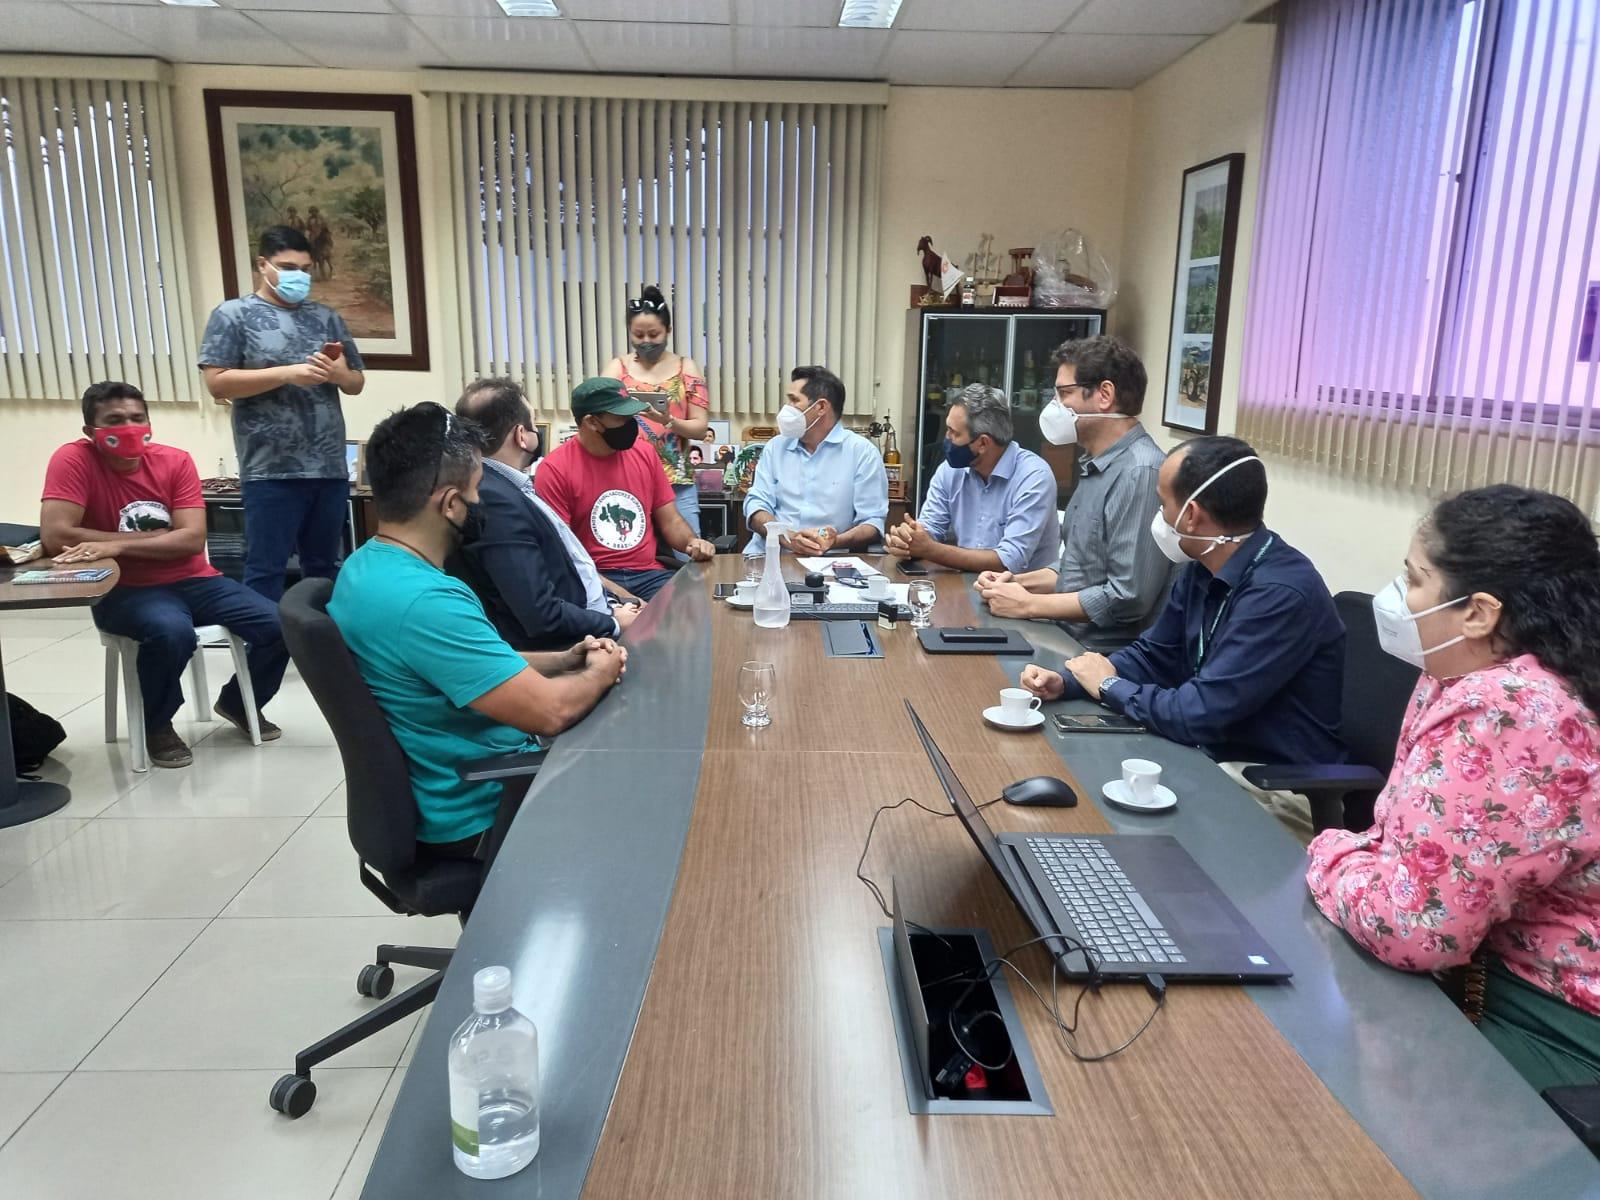 Representantes do Movimento dos Trabalhadores Rurais Sem-Terra do Ceará procuraram outras instituições e deputados estaduais para se reunir com a Polícia Federal